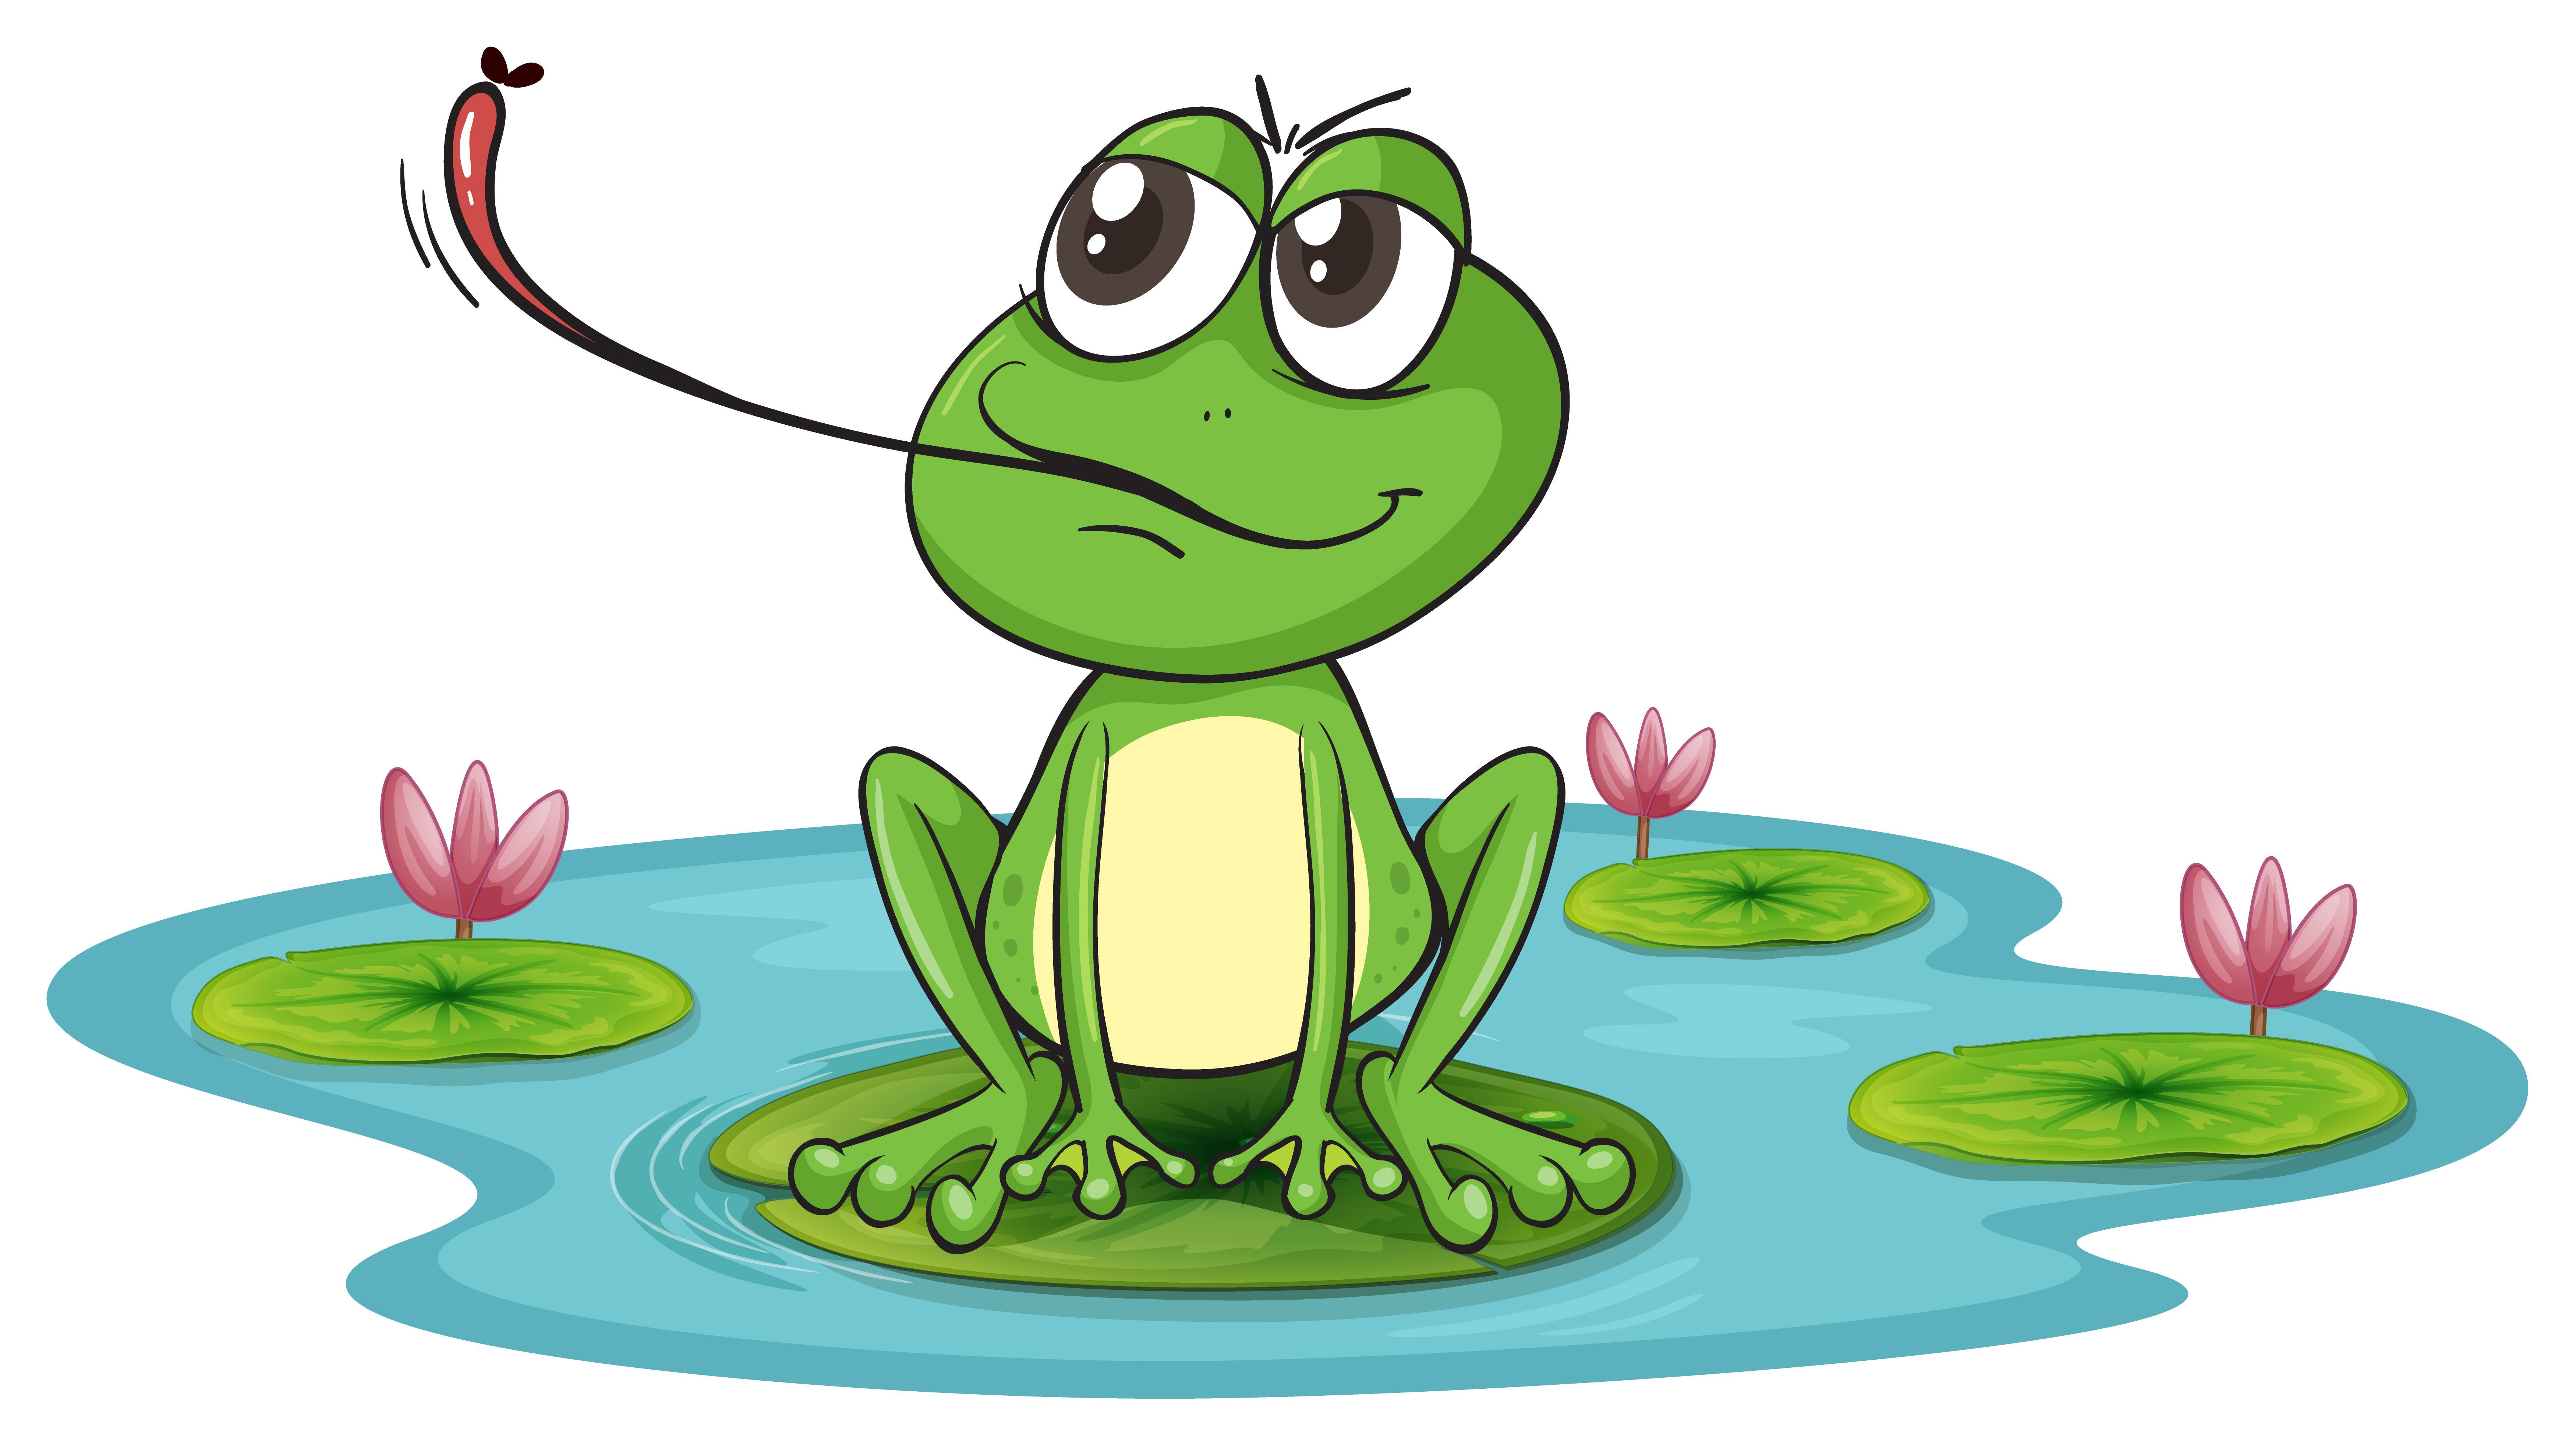 a frog - Download Free Vectors, Clipart Graphics & Vector Art